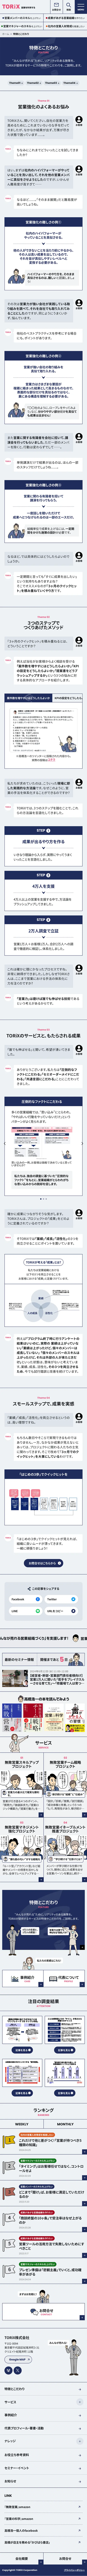 TORiX株式会社 | 営業を科学する |『無敗営業』シリーズの著者、高橋浩一による“みんなが売れる”ためのメディアのモバイルサイズの画像